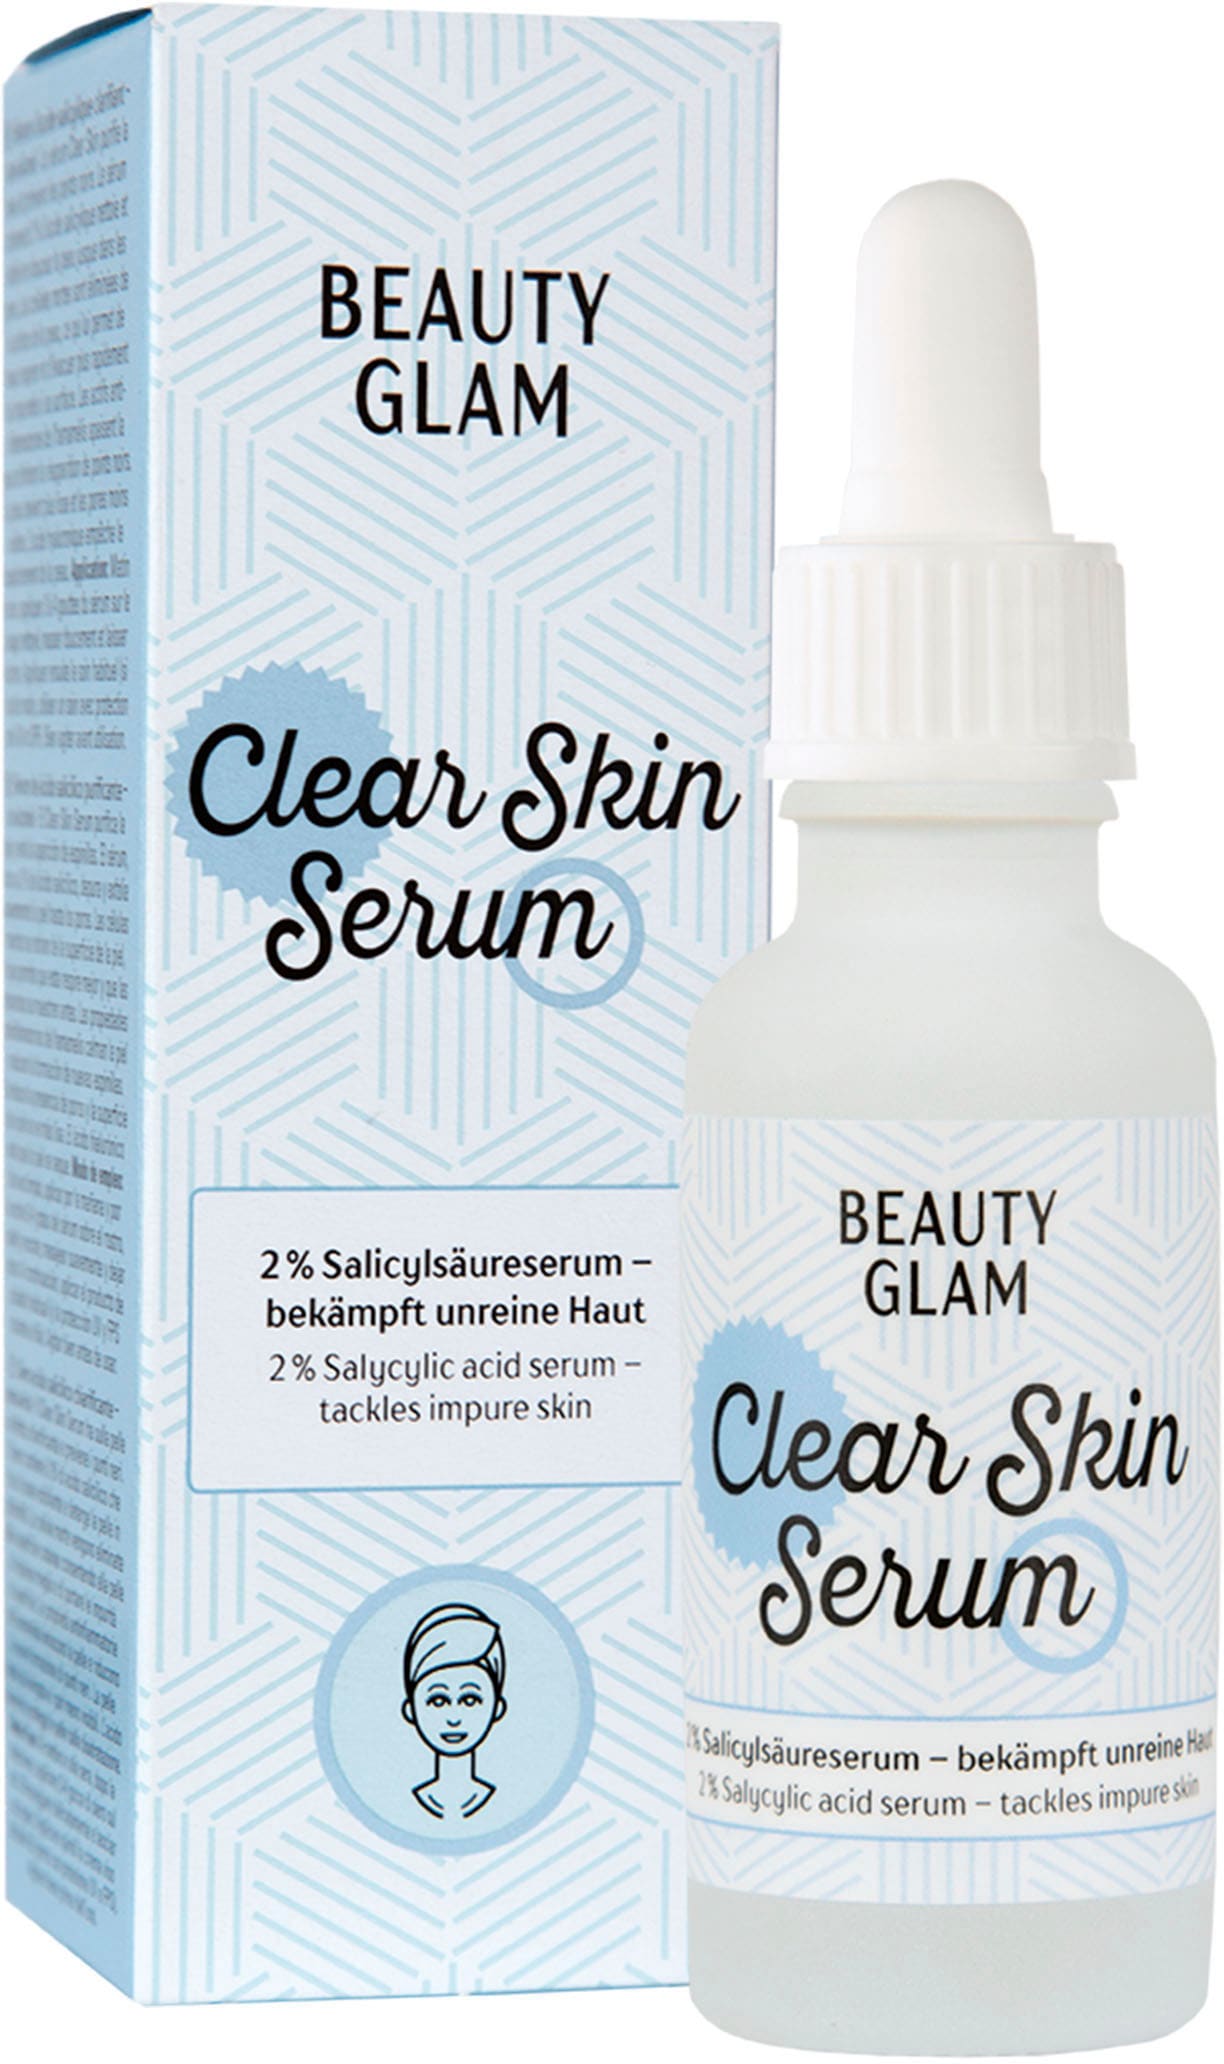 BEAUTY GLAM Gesichtsserum Serum« | BAUR online bestellen »Beauty Skin Glam Clear